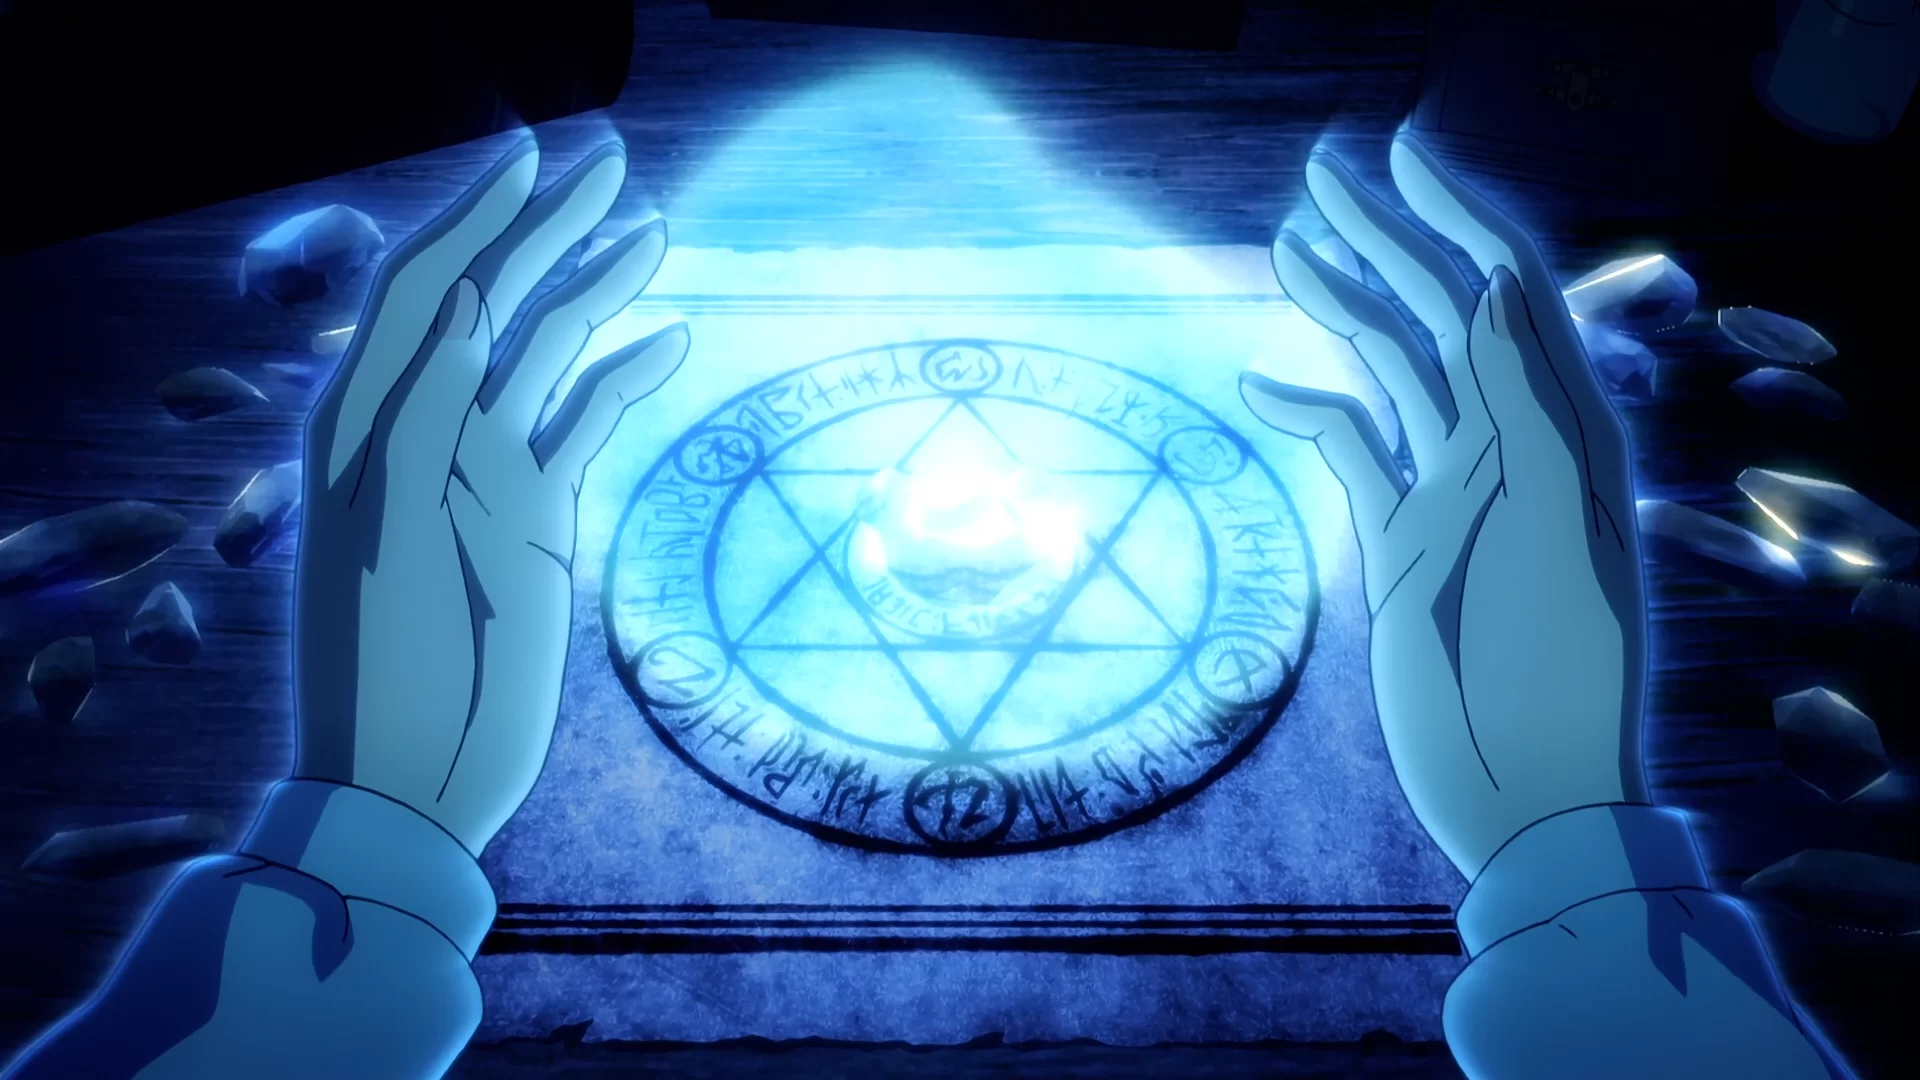 Minaturka 10 odcinka anime Fate/Zero